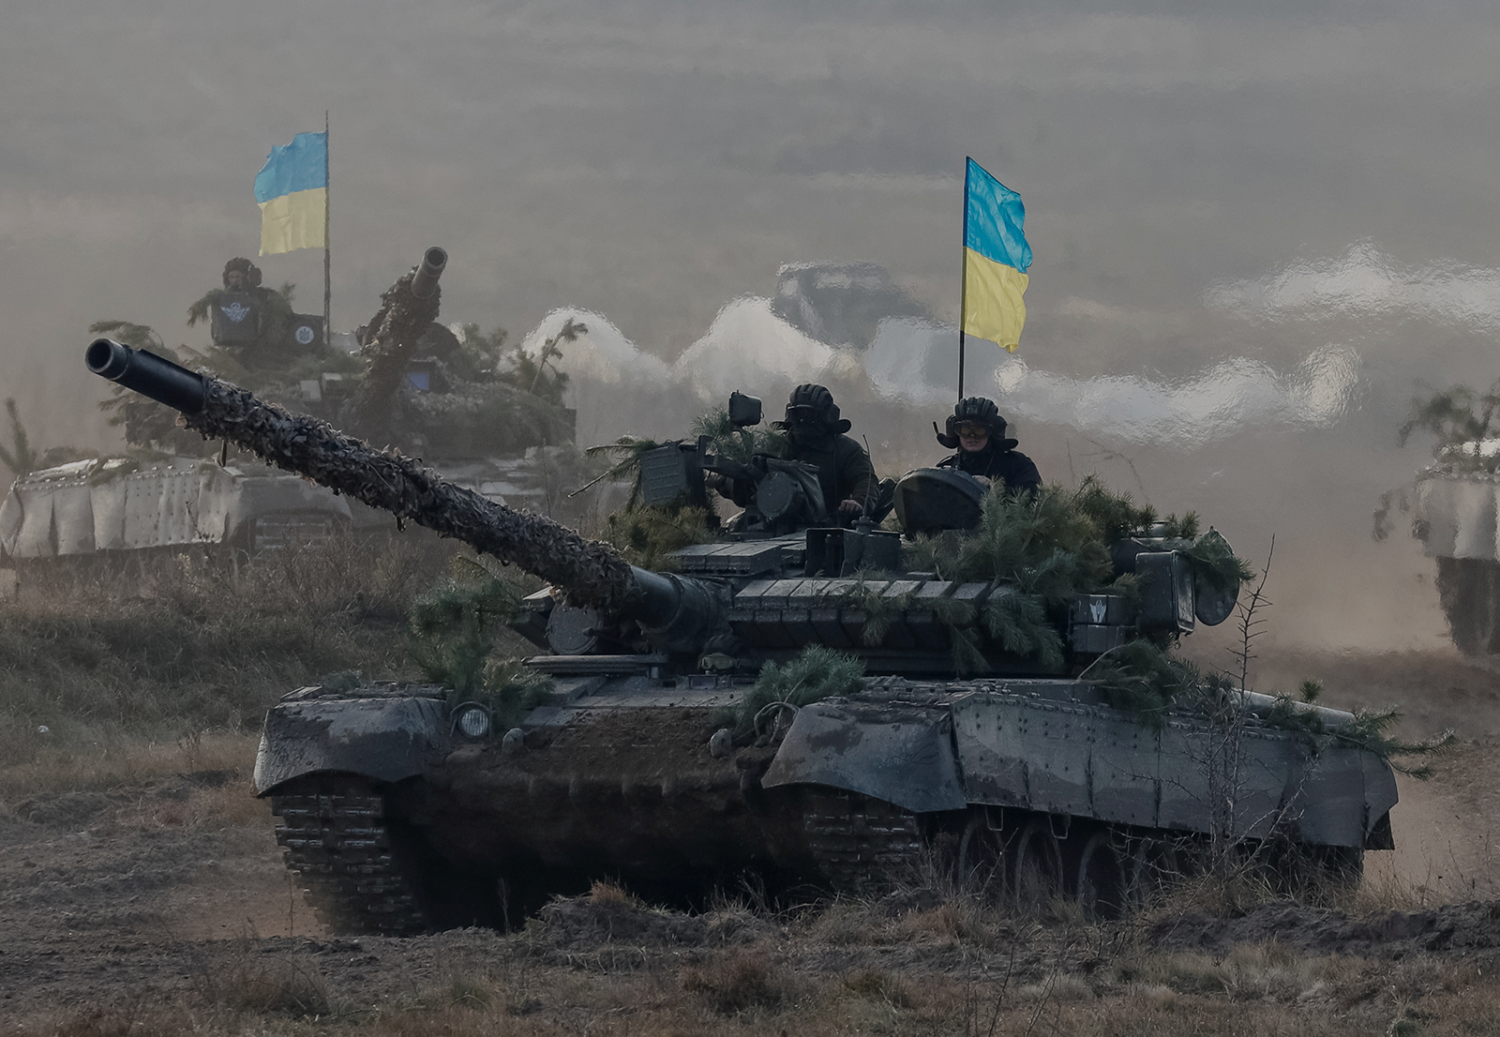 Украинские войска на Донбассе приведены в полную боевую готовность — СМИ